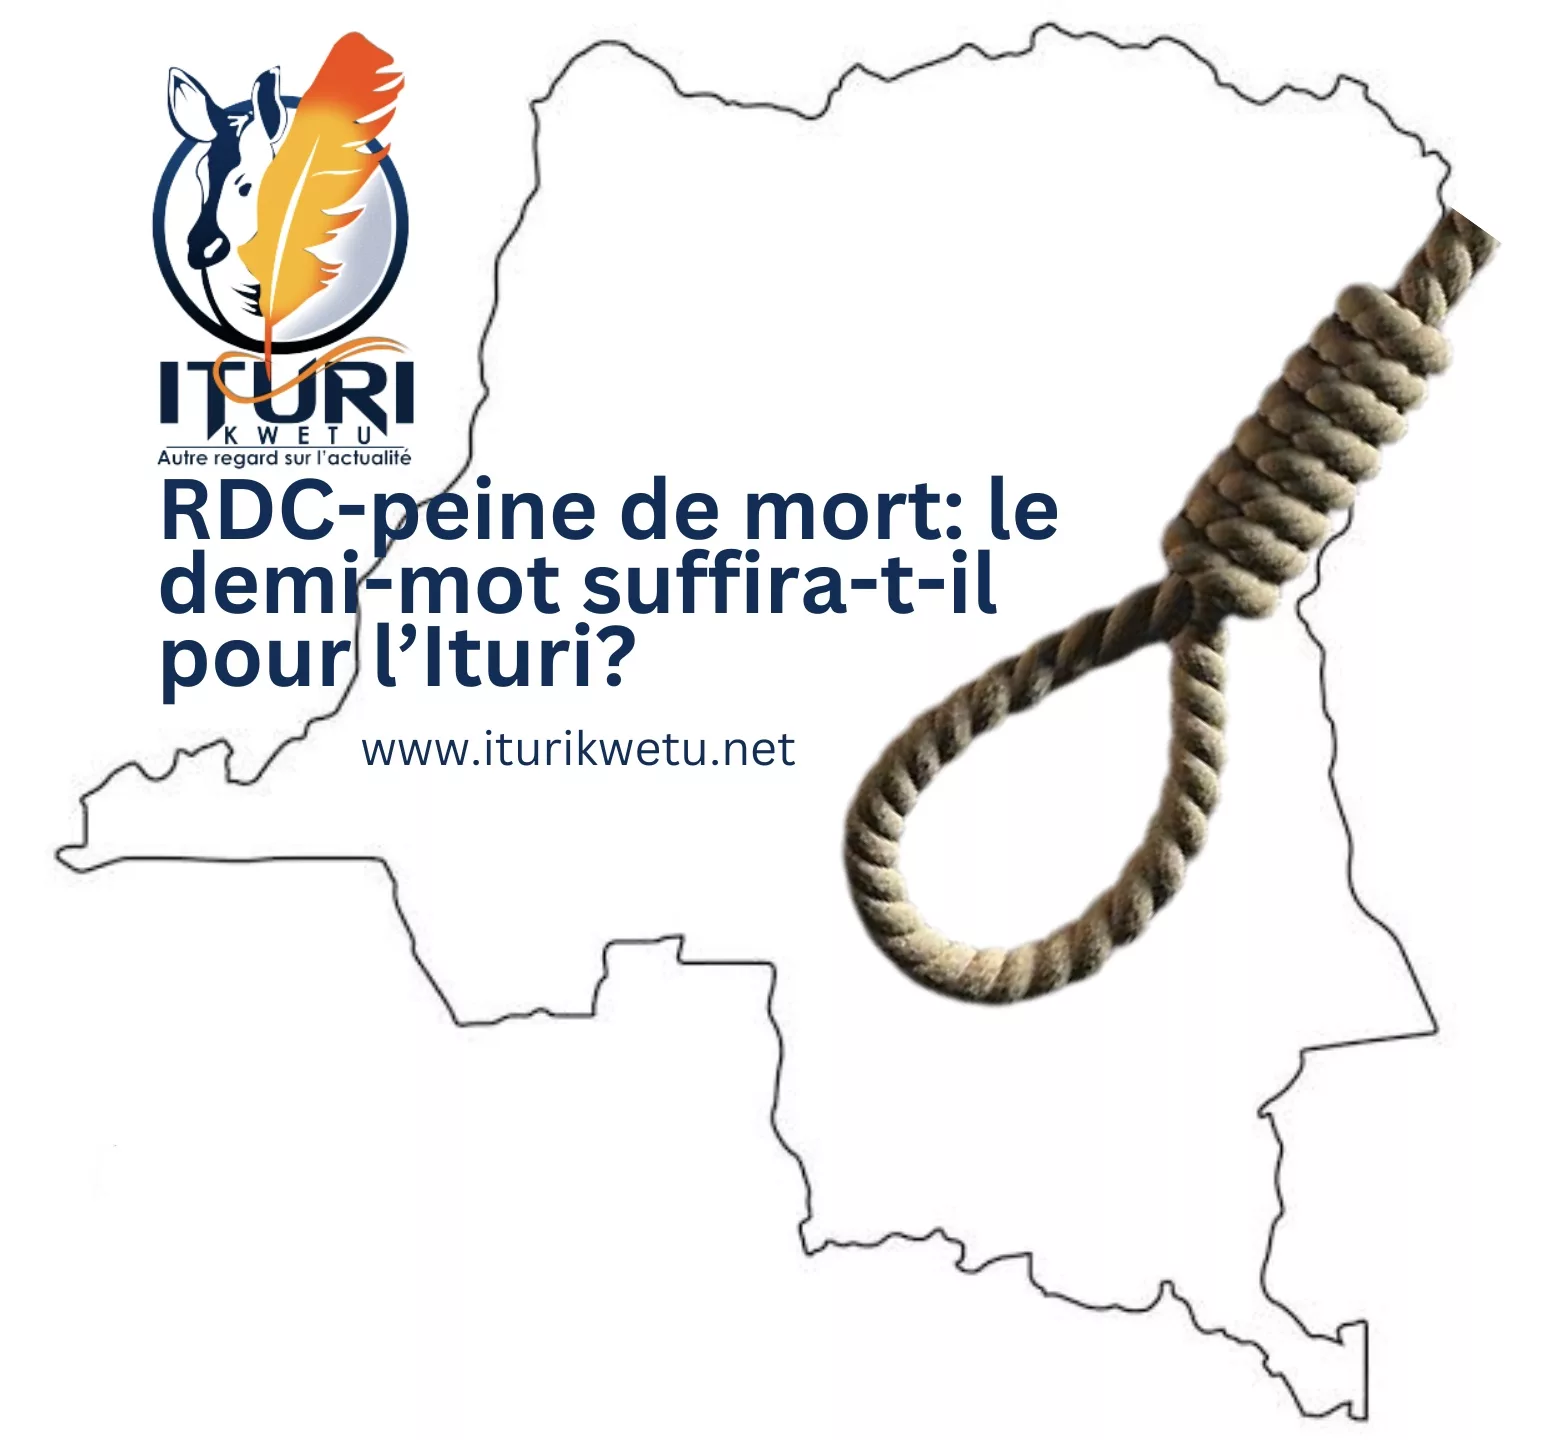 RDC-peine de mort: le demi-mot suffira-t-il pour l’Ituri?